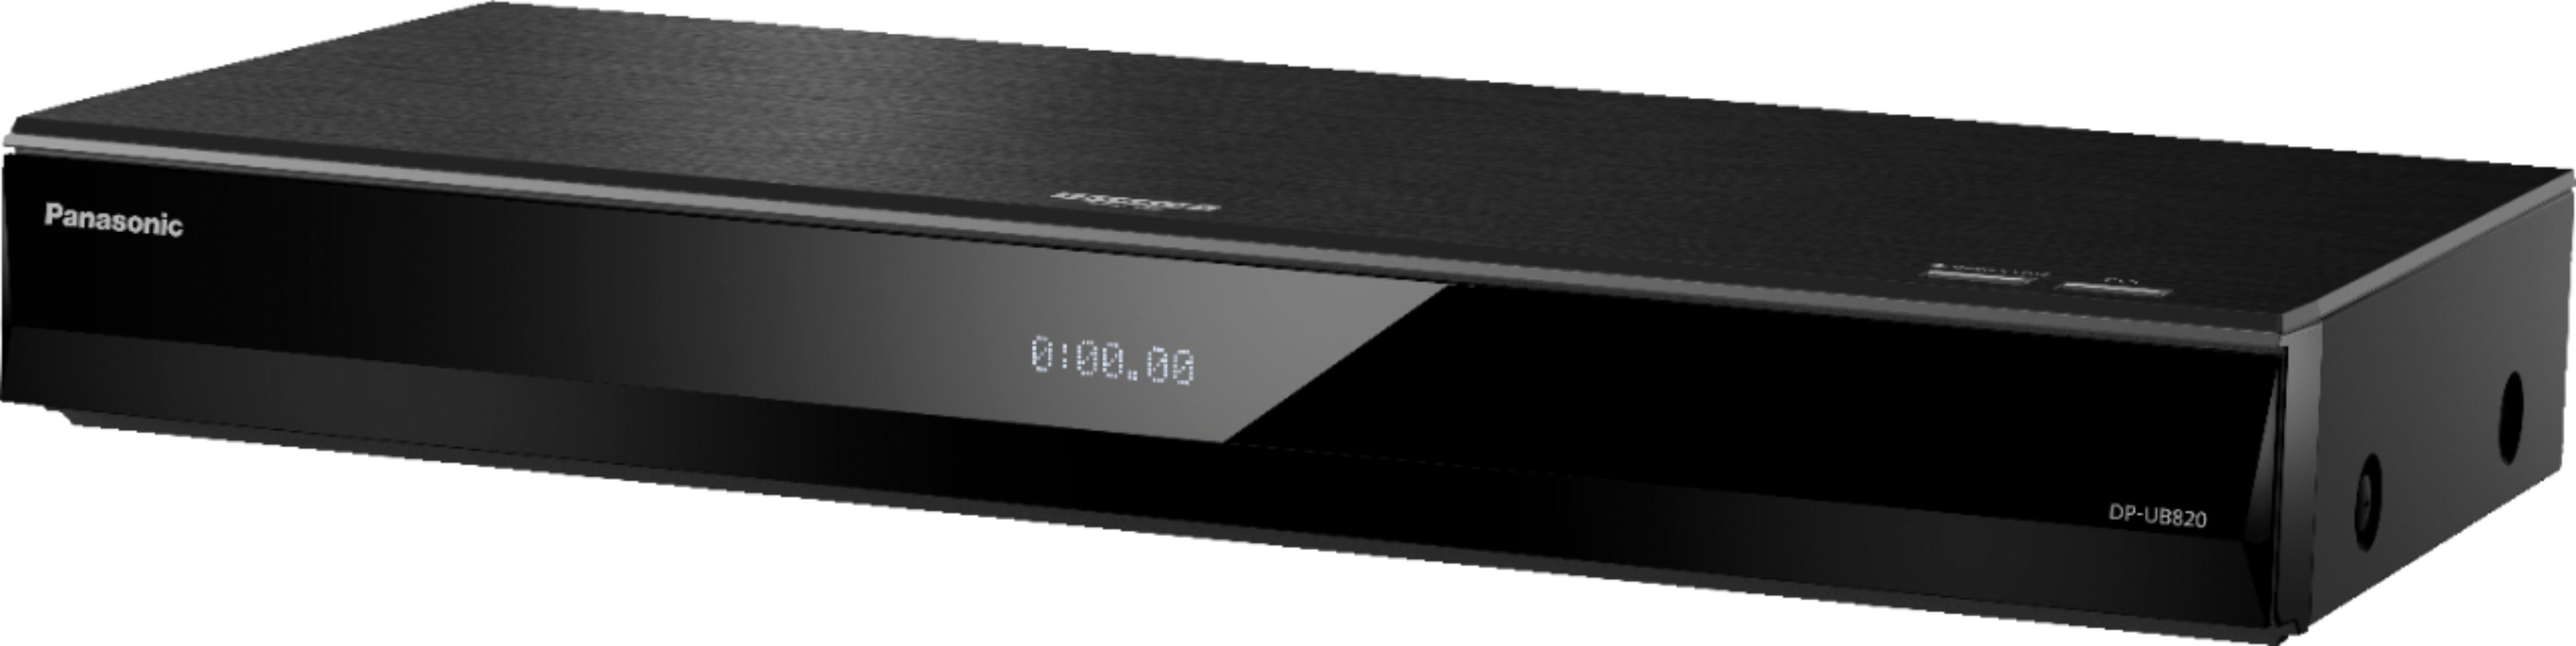 テレビ/映像機器 ブルーレイレコーダー Panasonic Streaming 4K Ultra HD Hi-Res Audio with Dolby Vision 7.1 